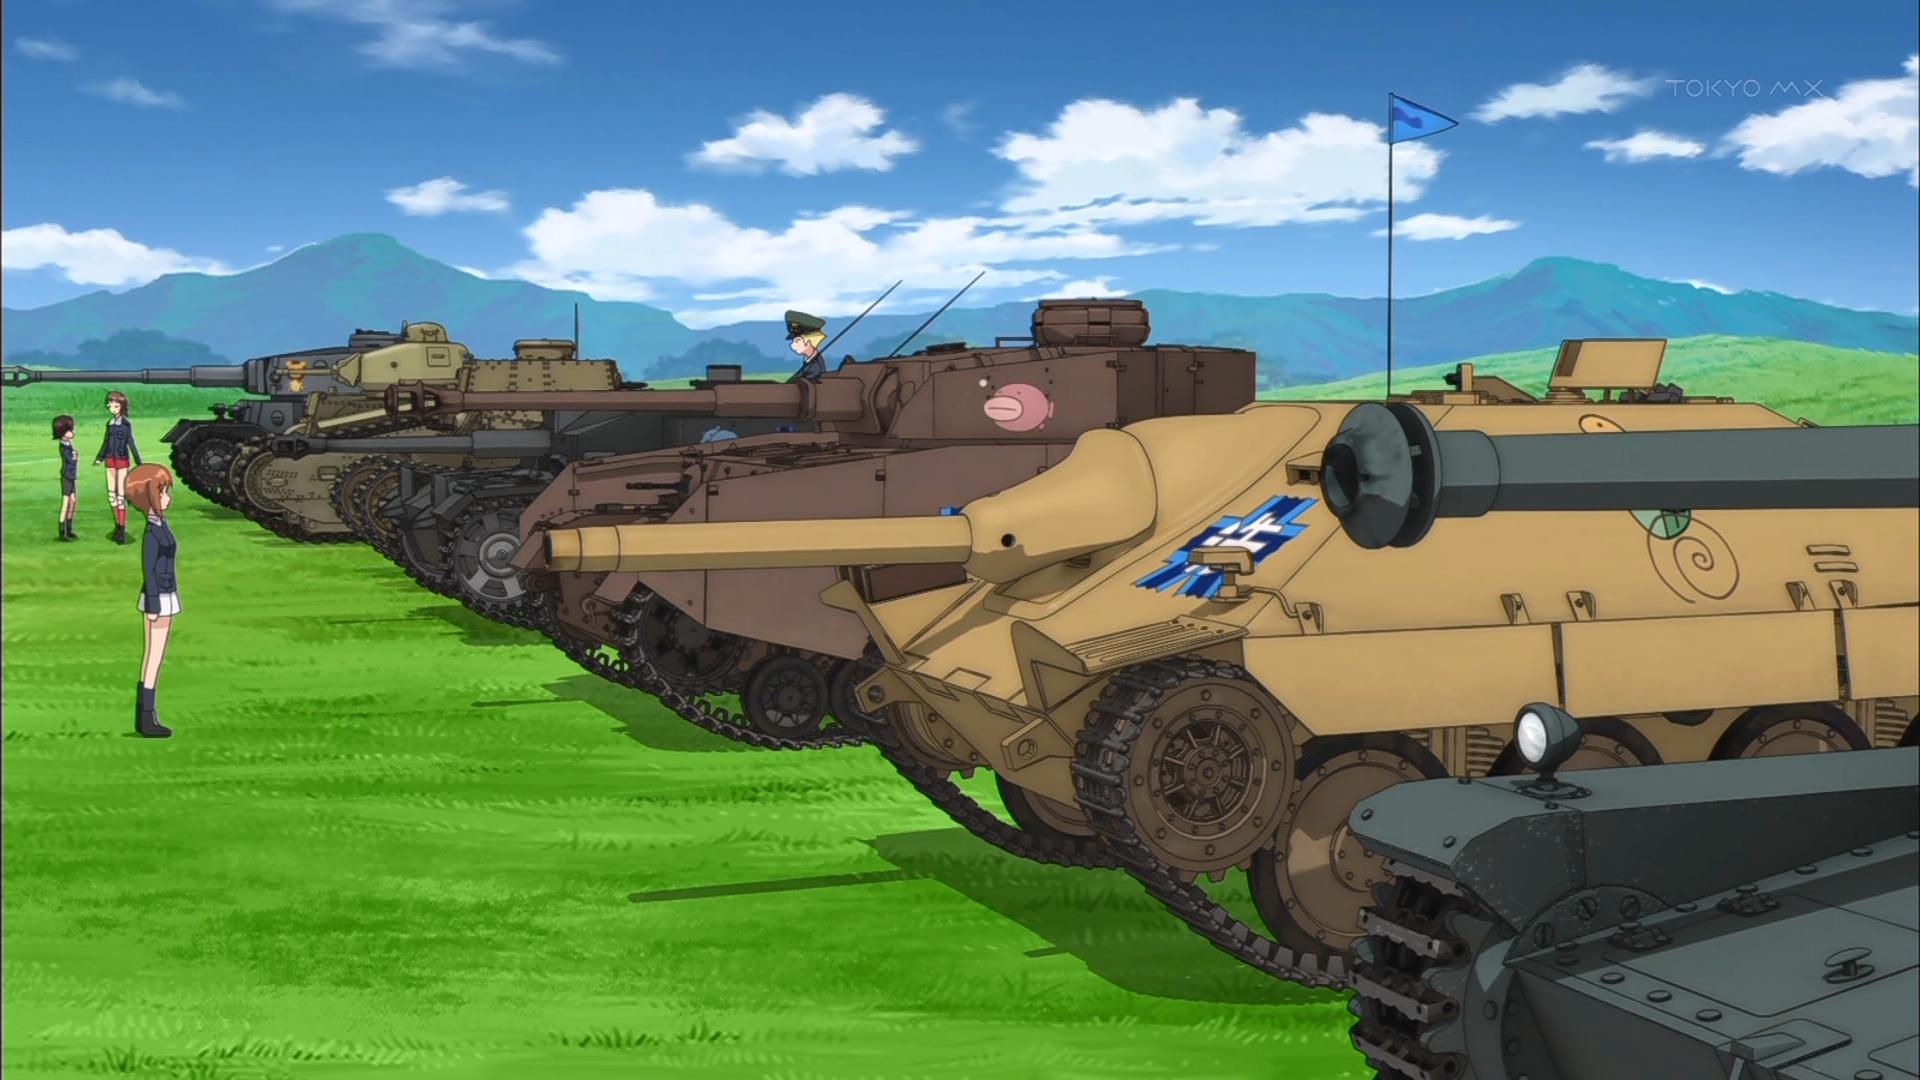 Oarai Tanks (Girls und Panzer)